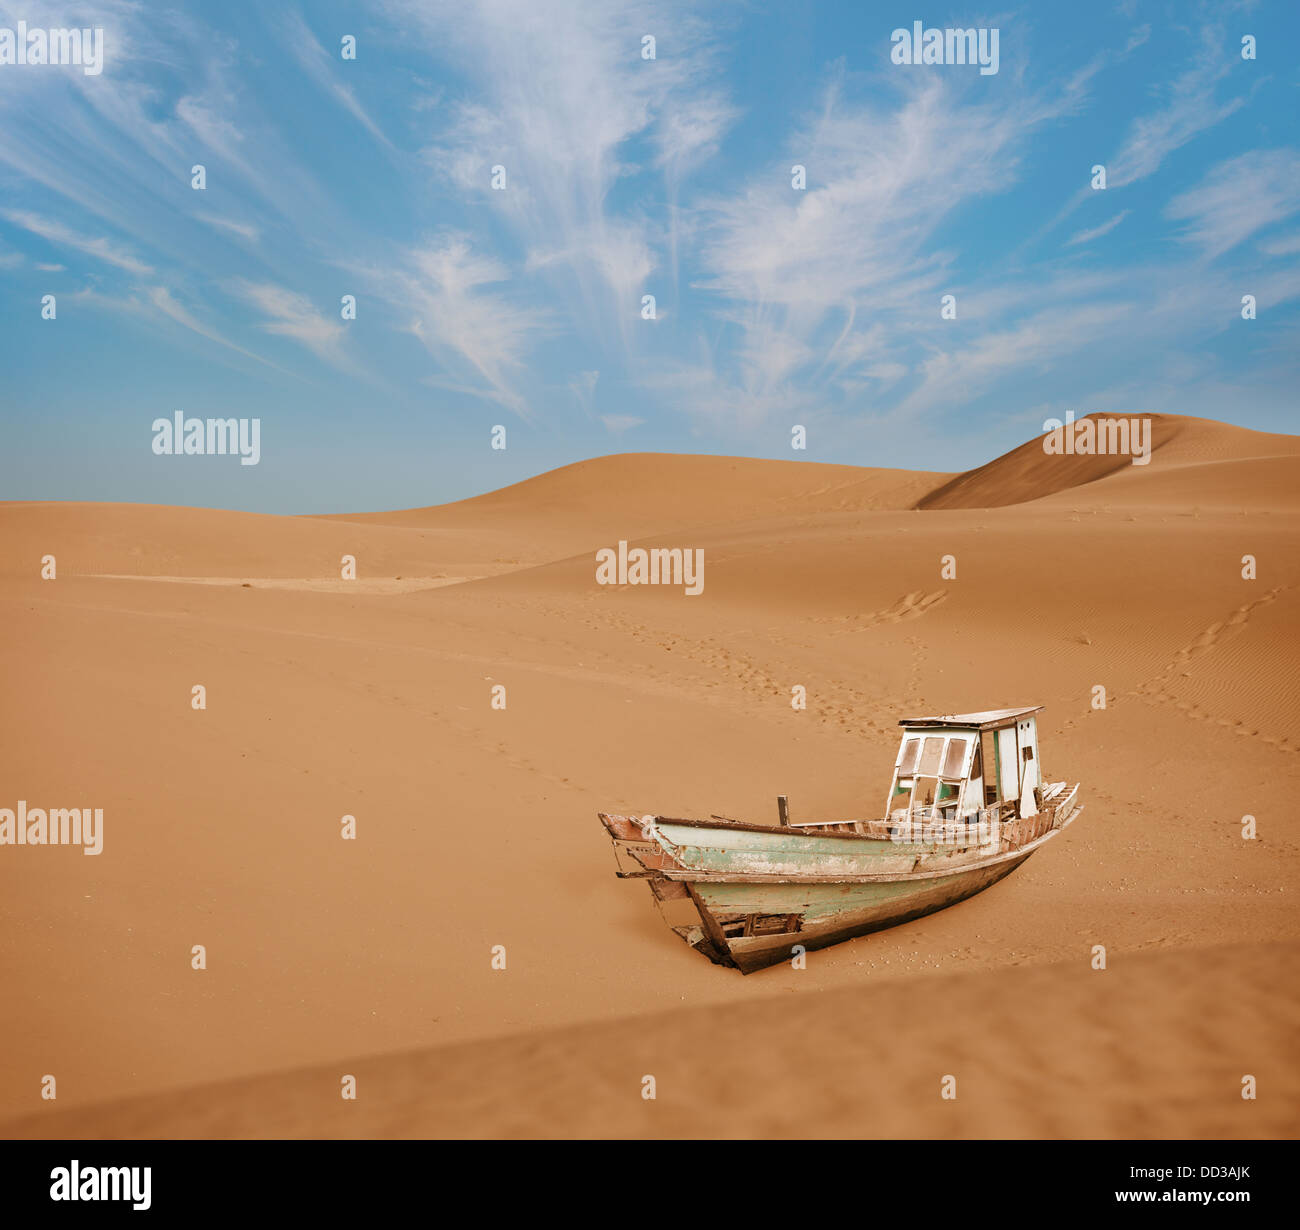 Vieux bateau abandonné parmi les dunes de sable dans le désert Banque D'Images